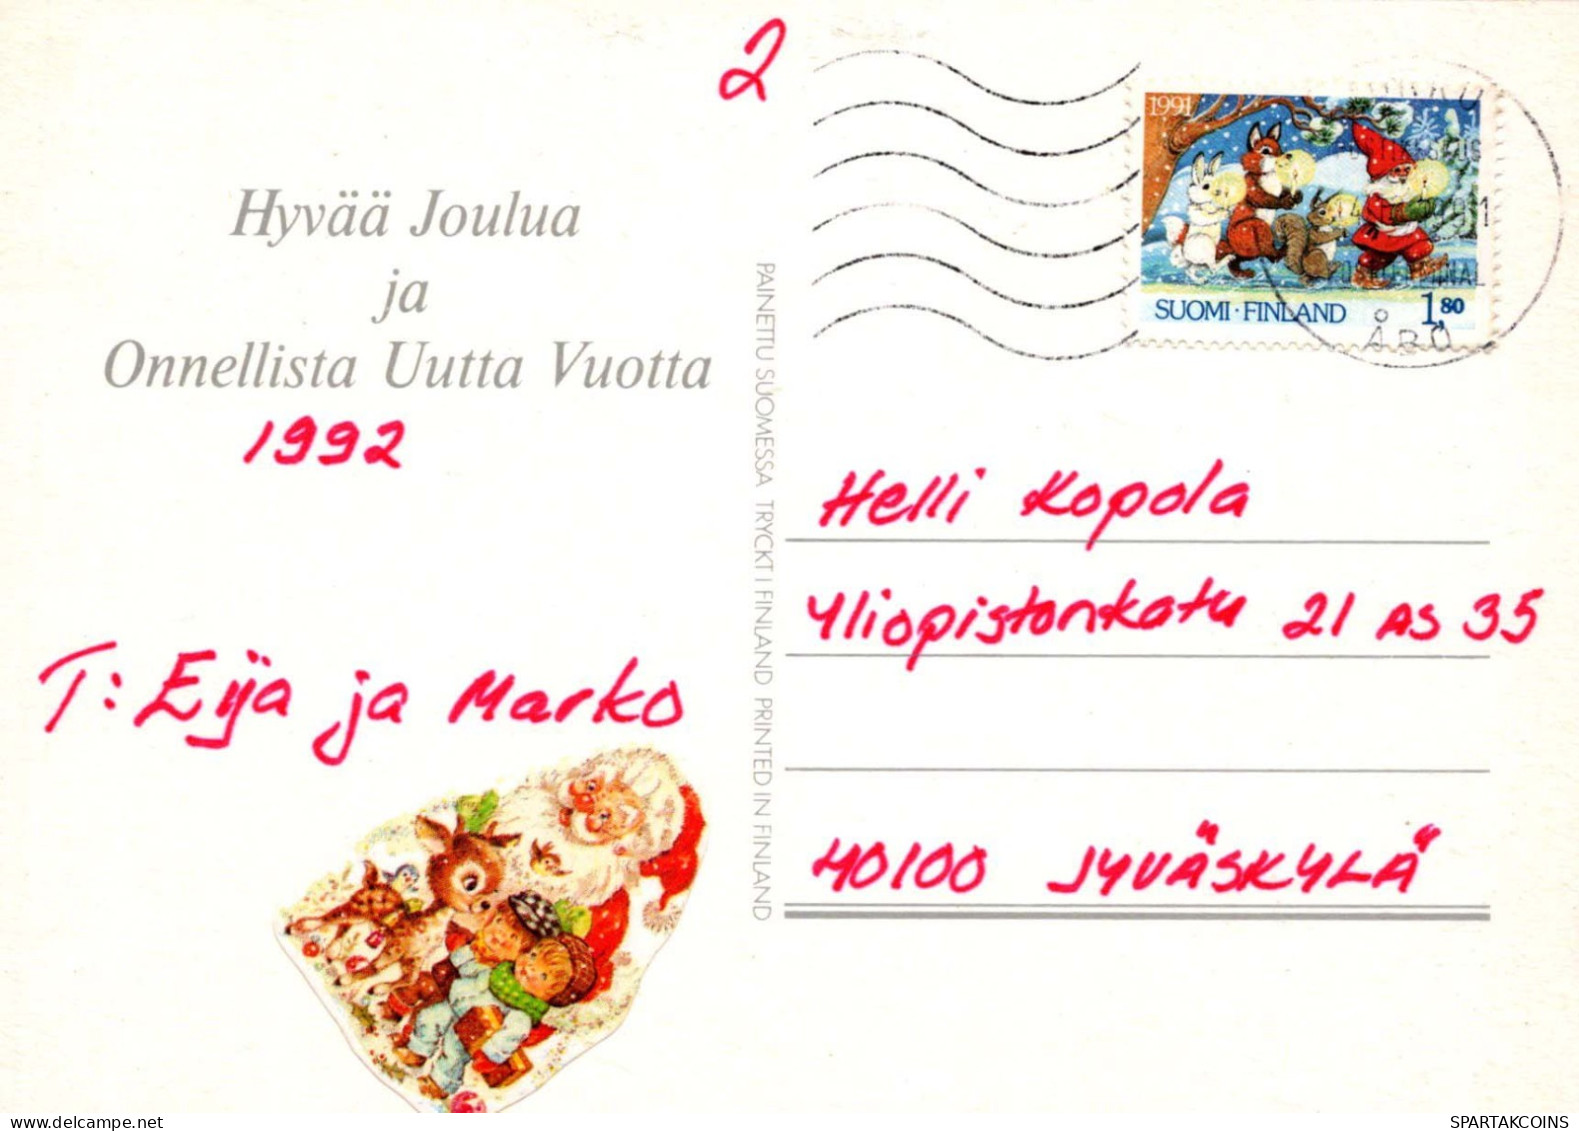 Jungfrau Maria Madonna Jesuskind Weihnachten Religion Vintage Ansichtskarte Postkarte CPSM #PBB771.A - Maagd Maria En Madonnas